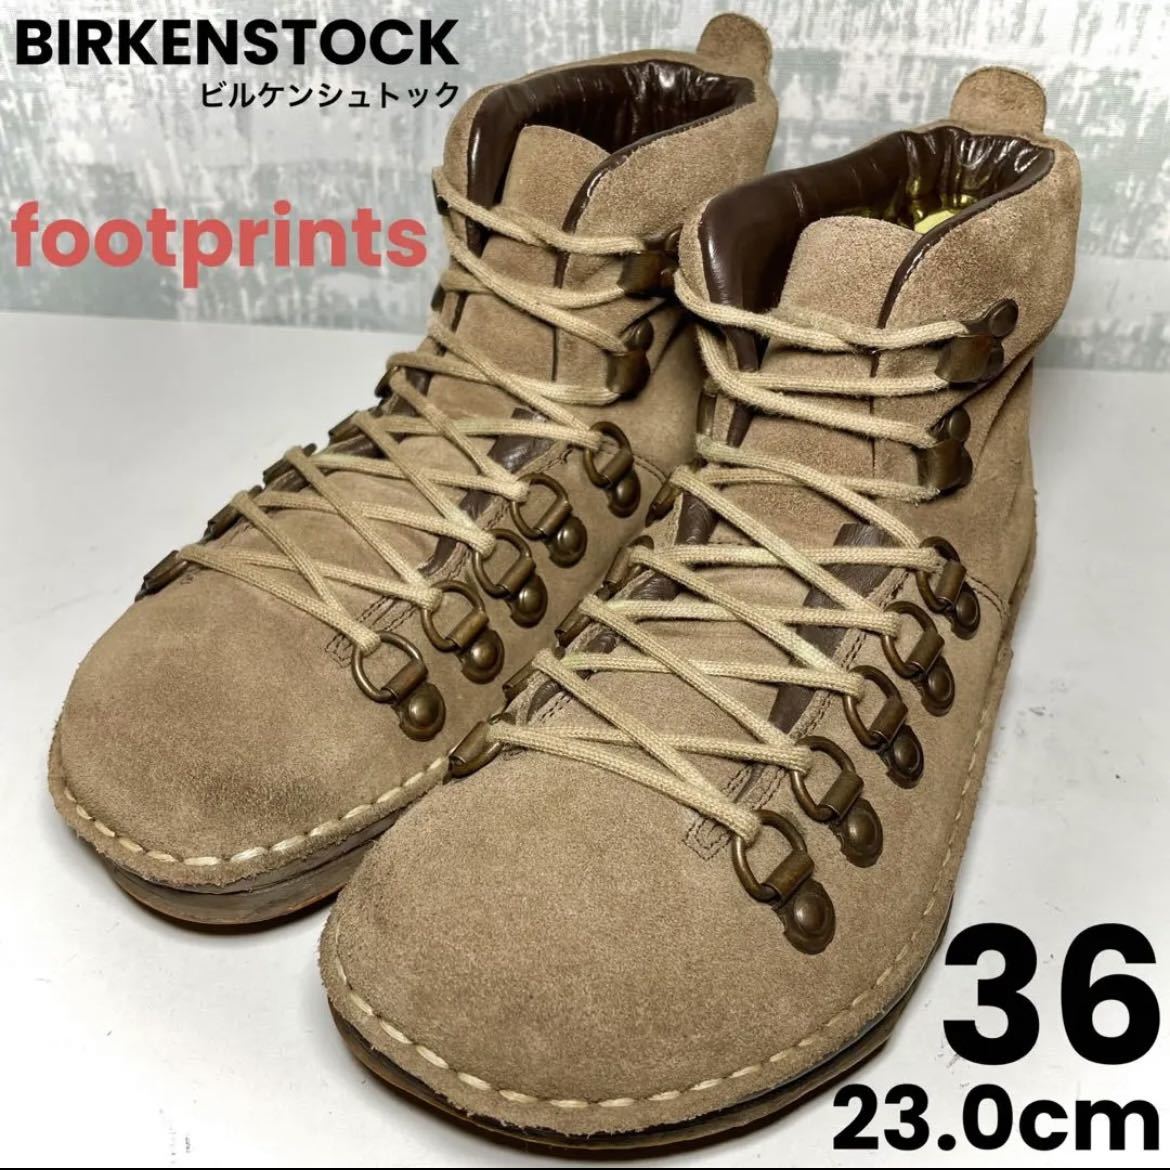 【MIDLAND！】BIRKENSTOCK ビルケンシュトック ミッドランド 36 23.0cm ダークブラウン ドイツ 焦茶 スエード footprints フットプリンツ